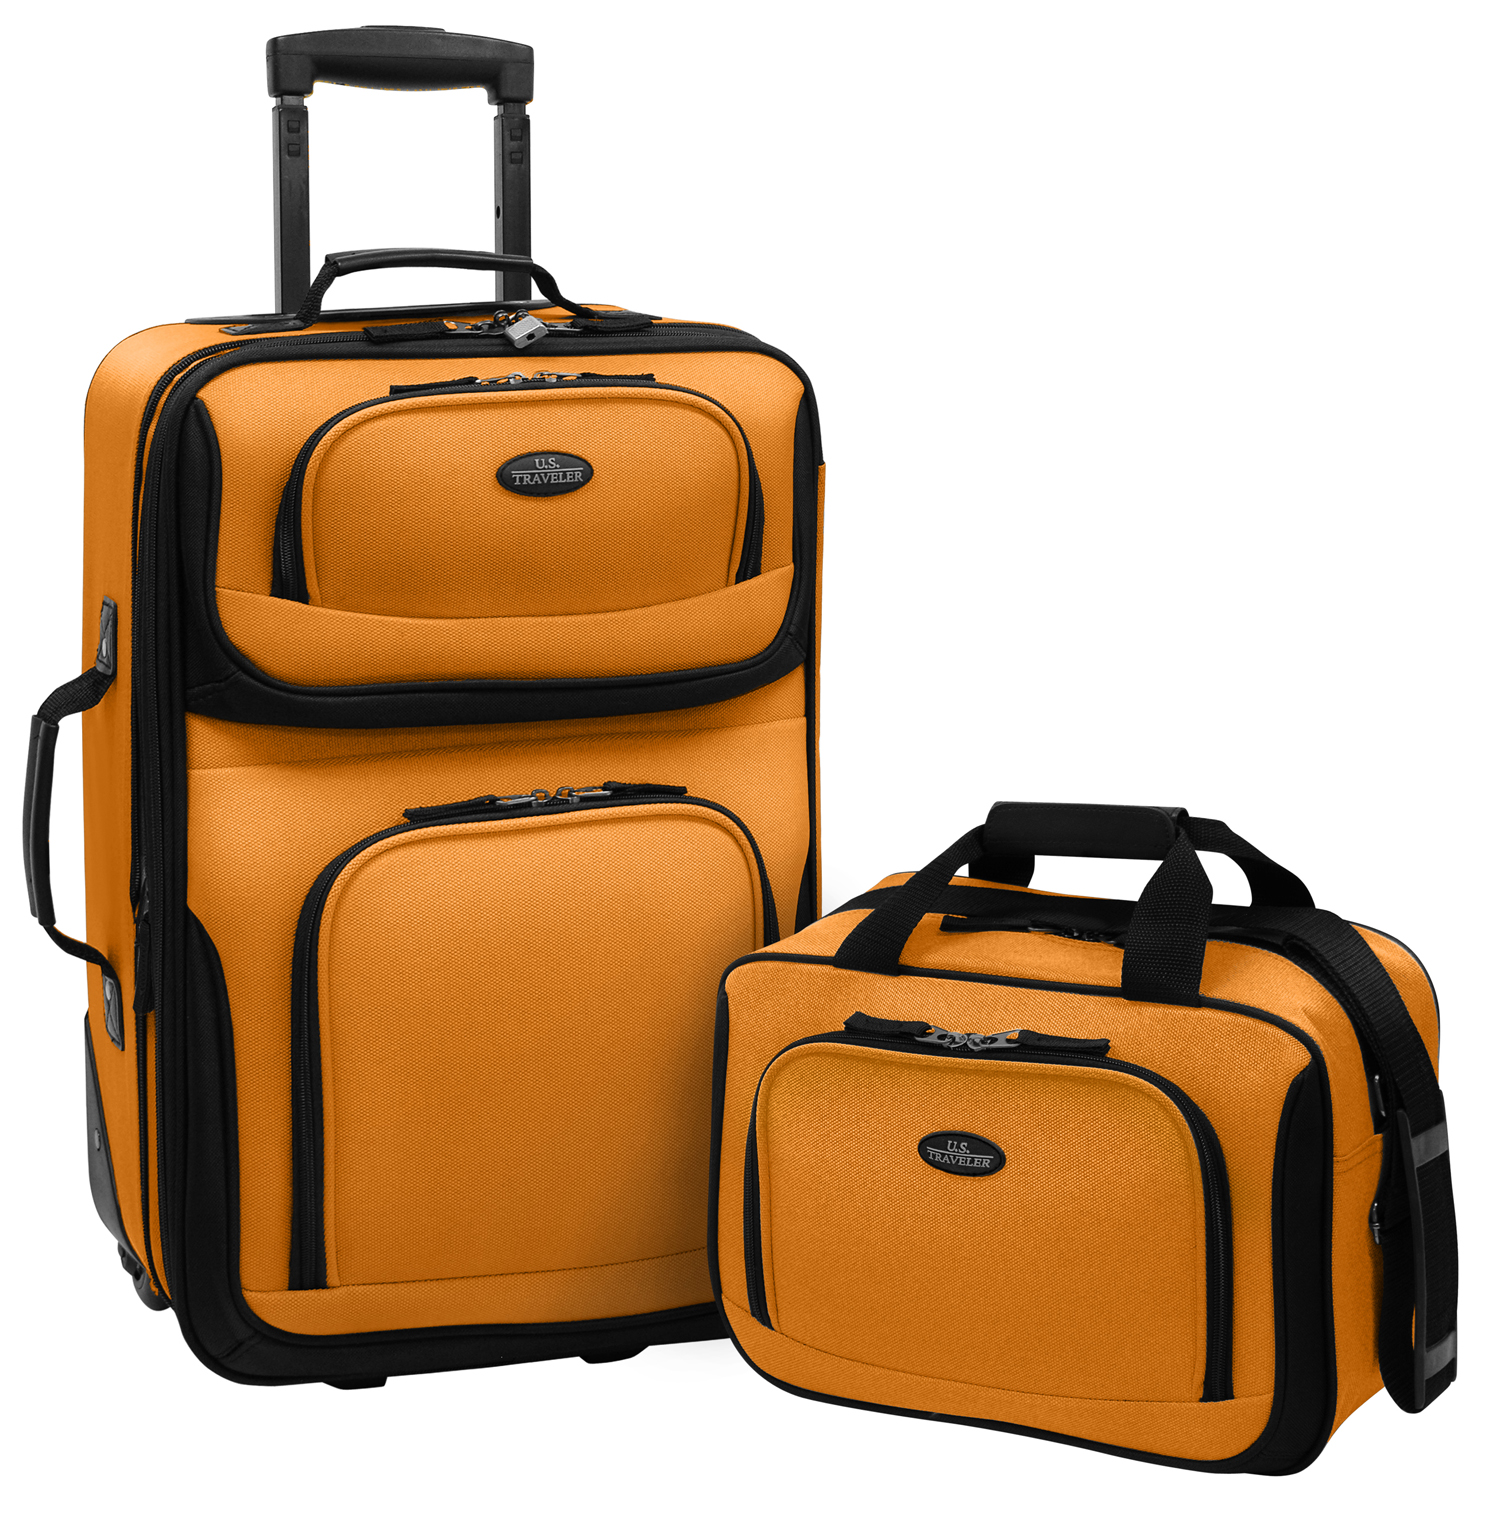 2-piece Expandable Travel Luggage Set In Orange